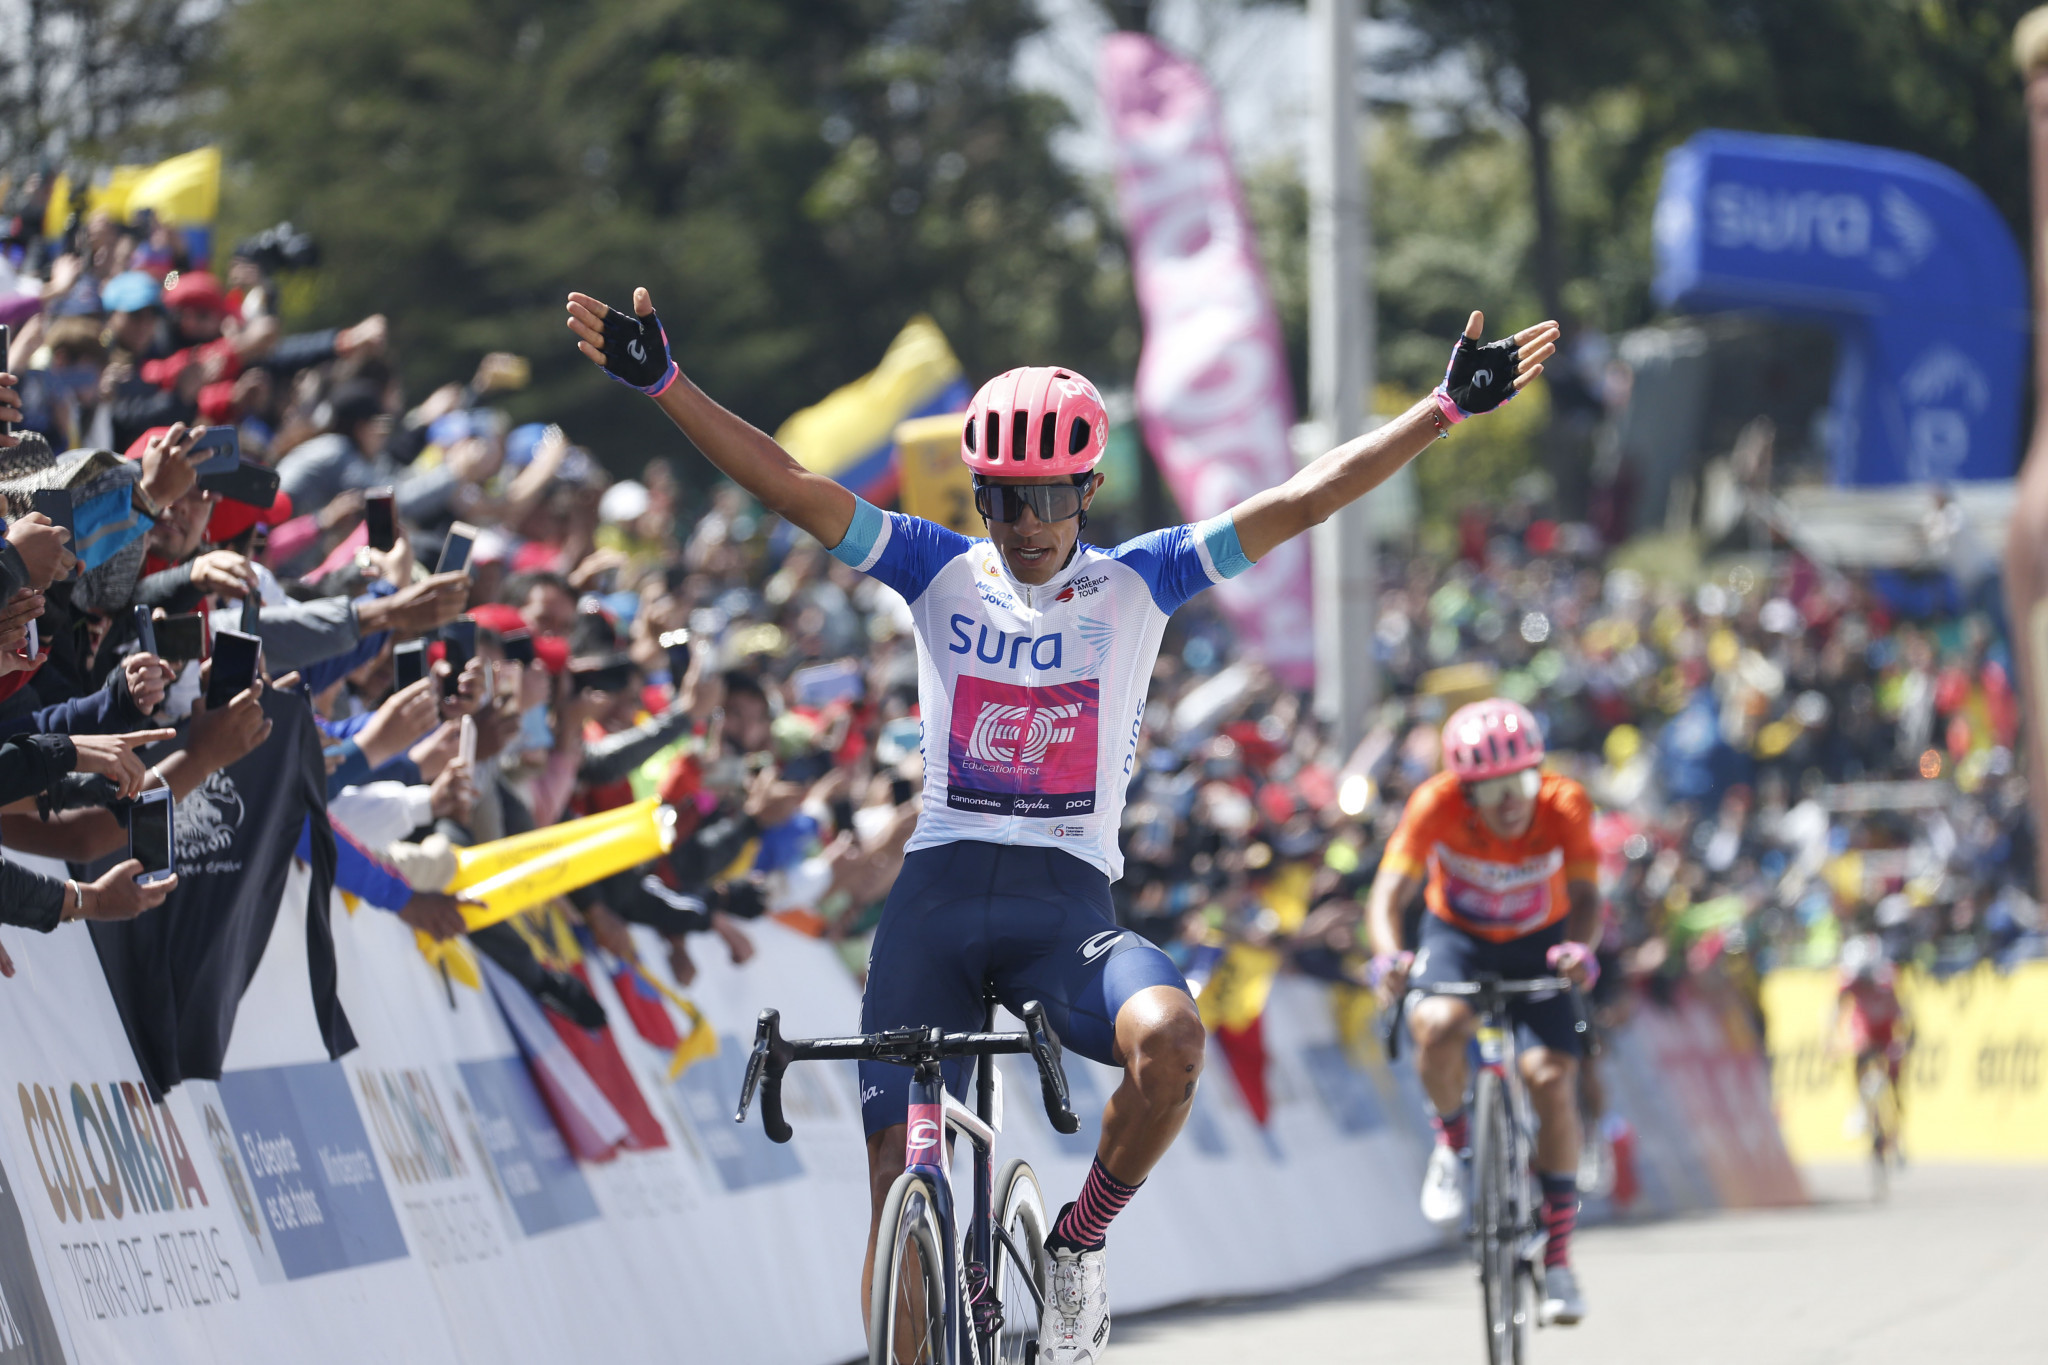 Safety controversy overshadows Critérium du Dauphiné win for Martínez